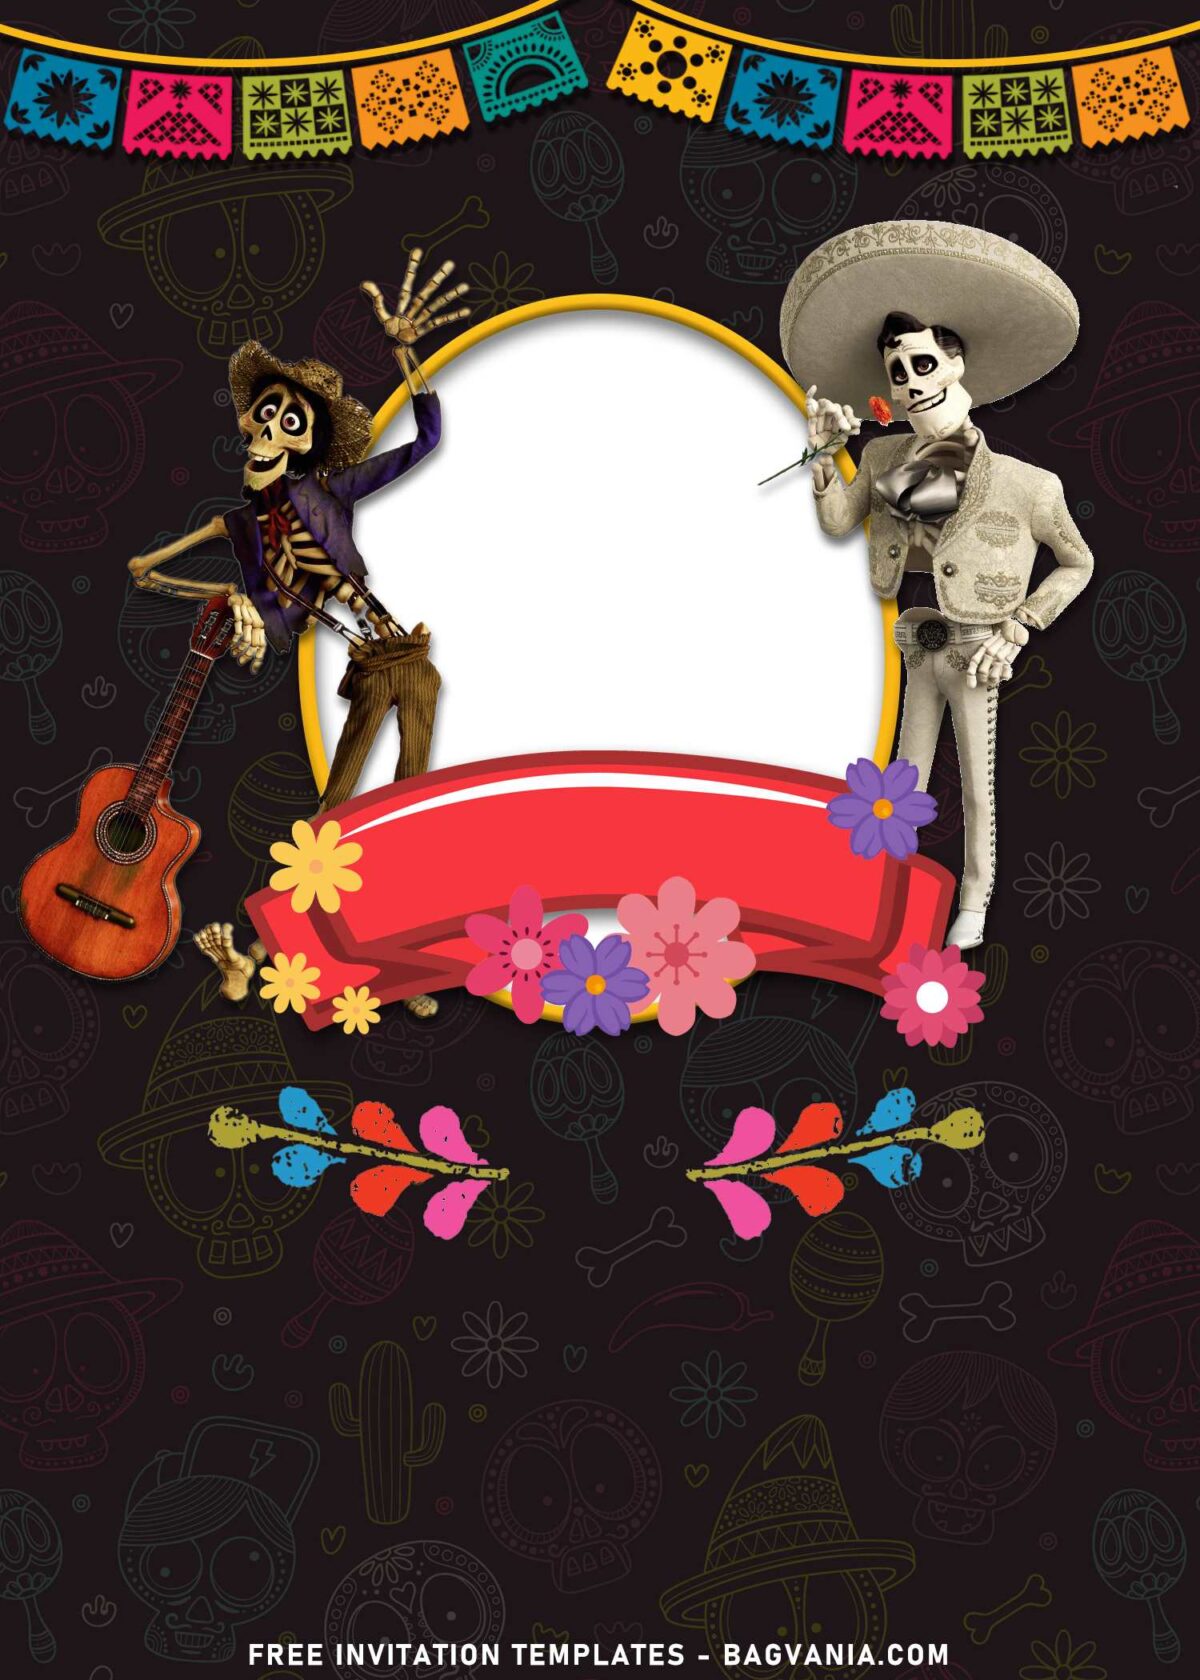 11+ Lively Mexican Fiesta Disney Coco Birthday Invitation Templates with Hector and Ernesto de la Cruz